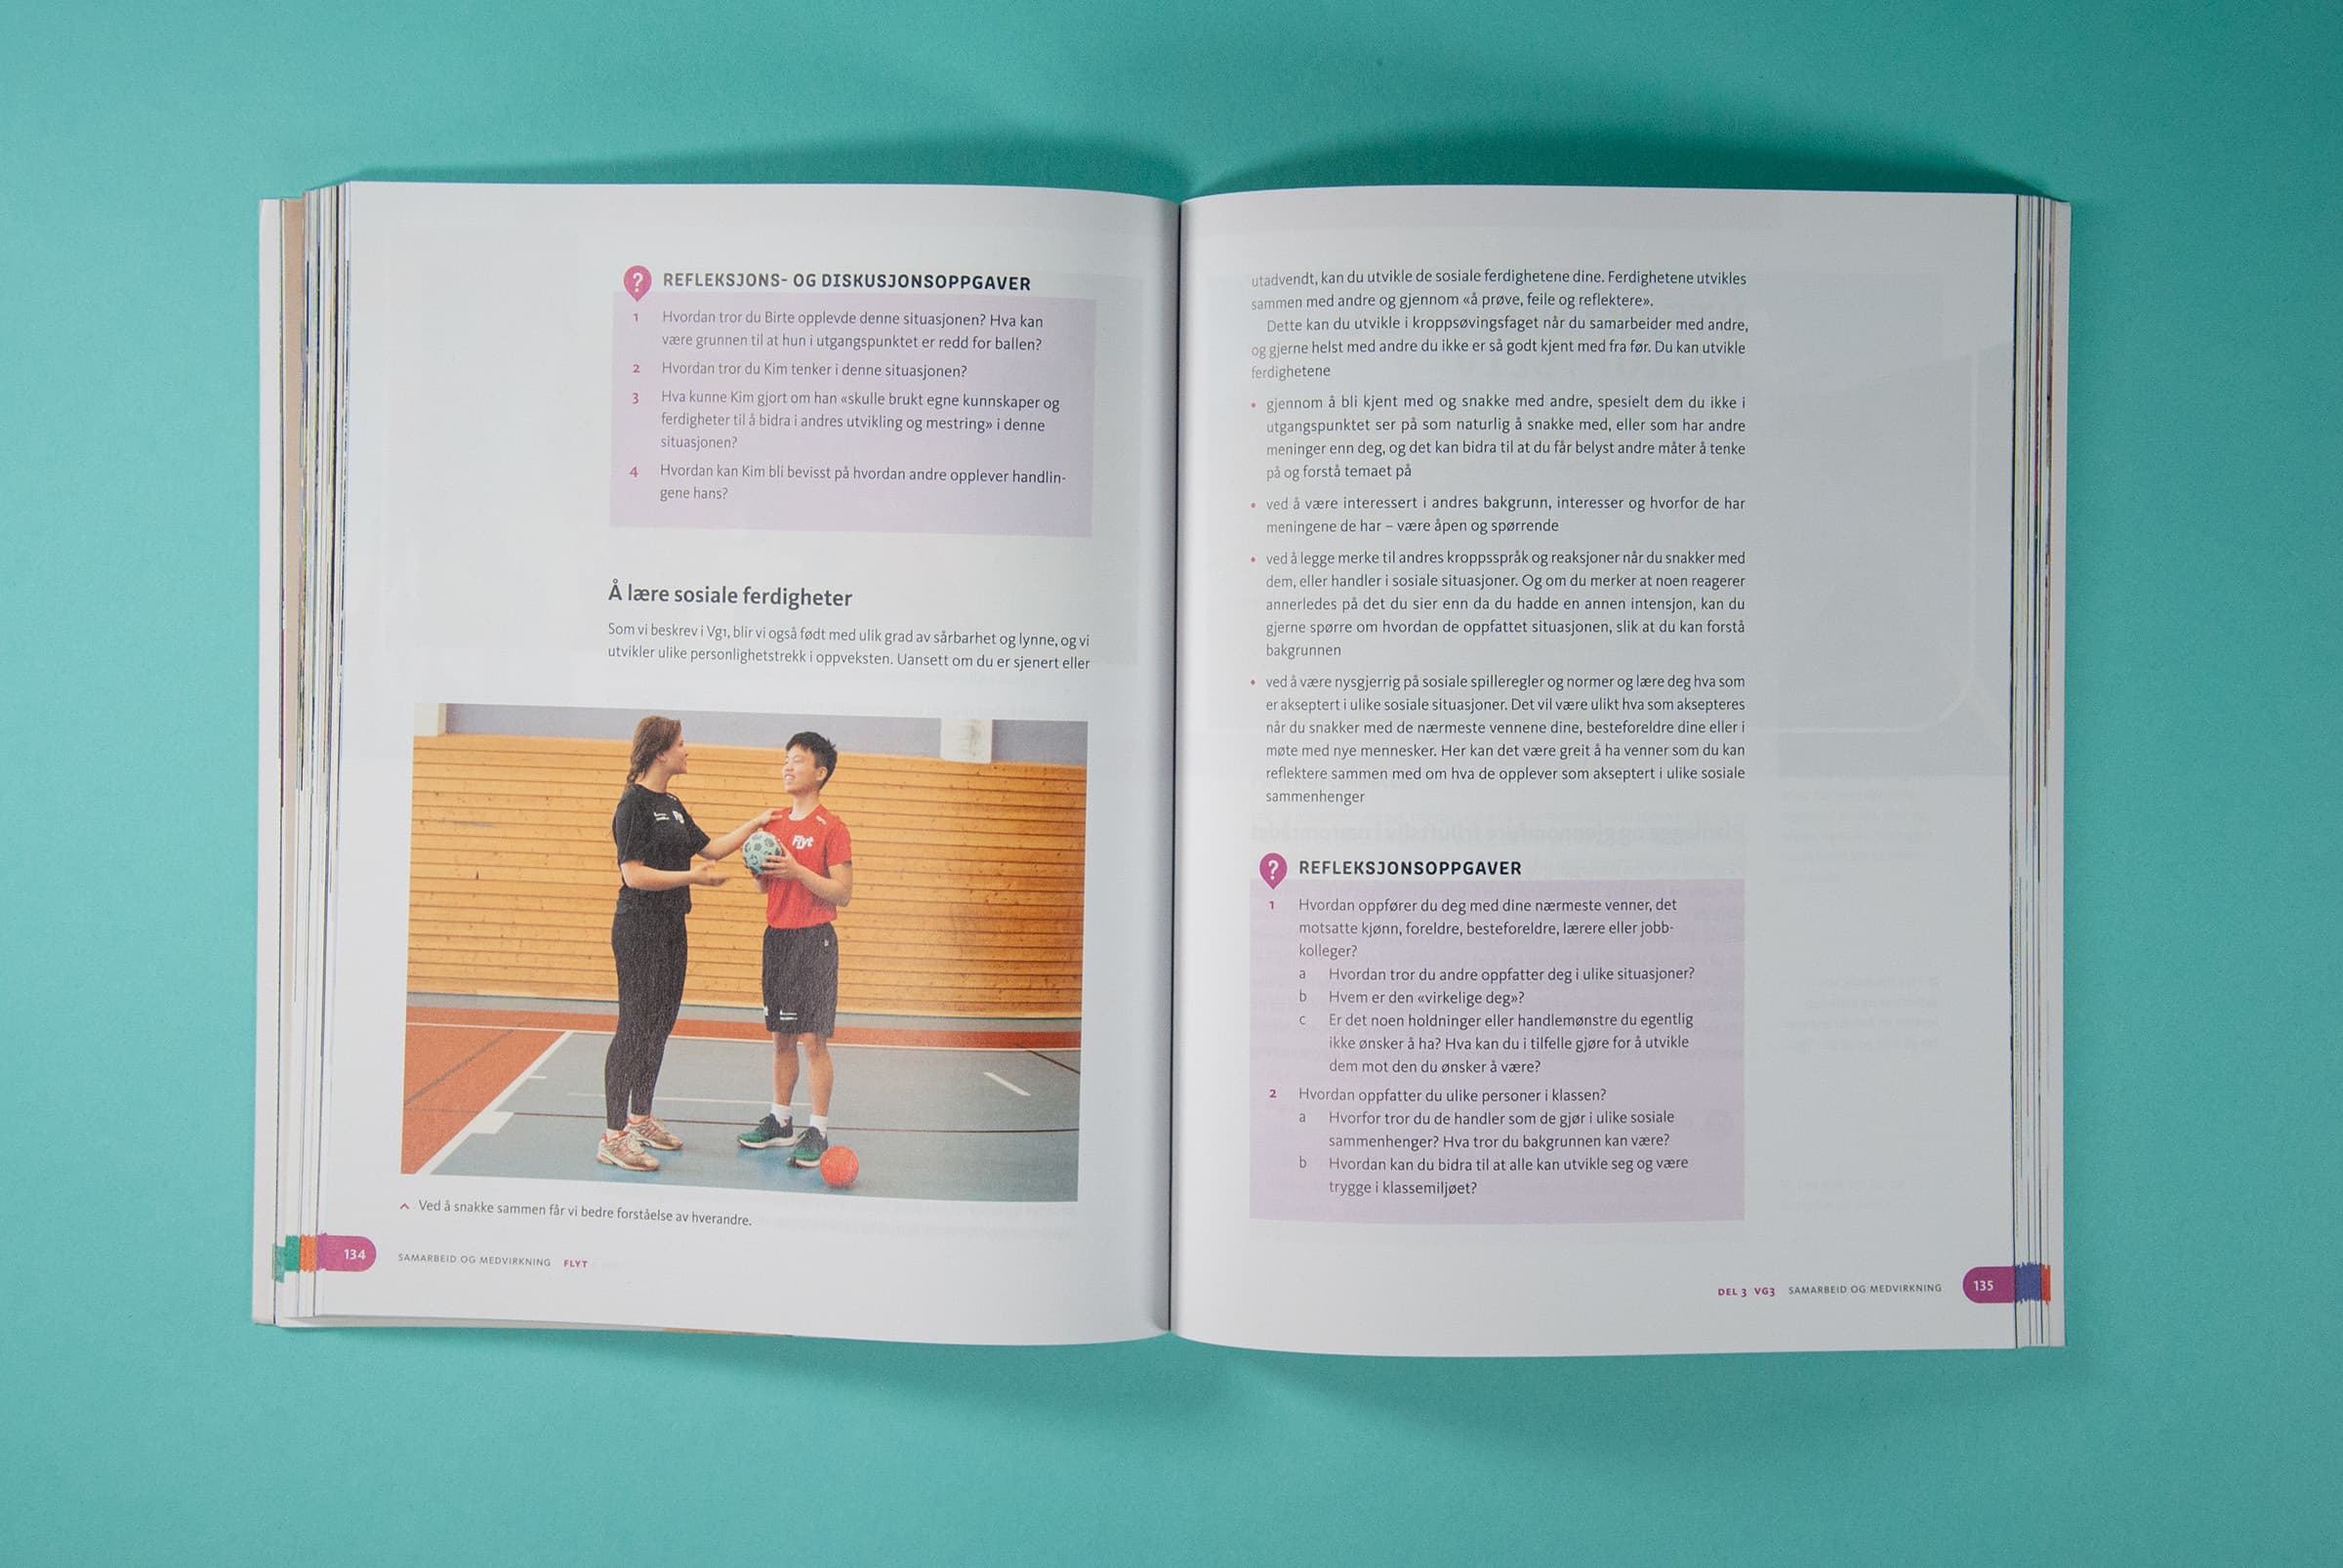 Dette bildet viser et oppslag i boken hvor det er et bilde av to personer i gymsalen, og to ulike bokser med refleksjonsoppgaver.